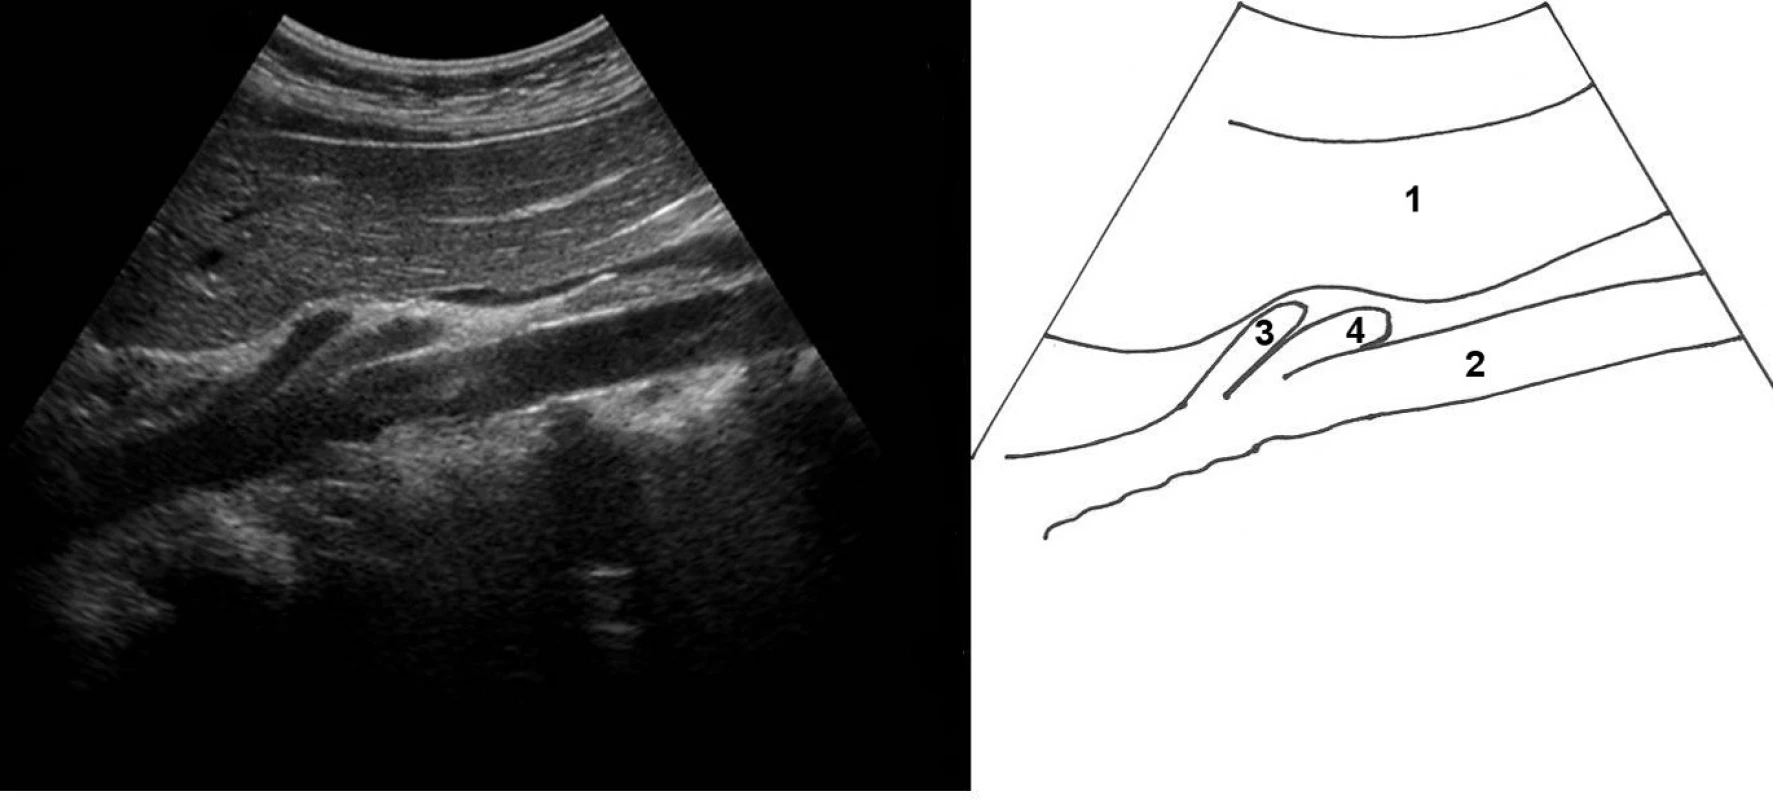 Podélné zobrazení odstupu hlavních epigastrických arteriální kmenů z aorty; 1 – levý lalok jater, 2 – aorta, 3 – truncus coeliacus, 4 – a. mesenterica superior